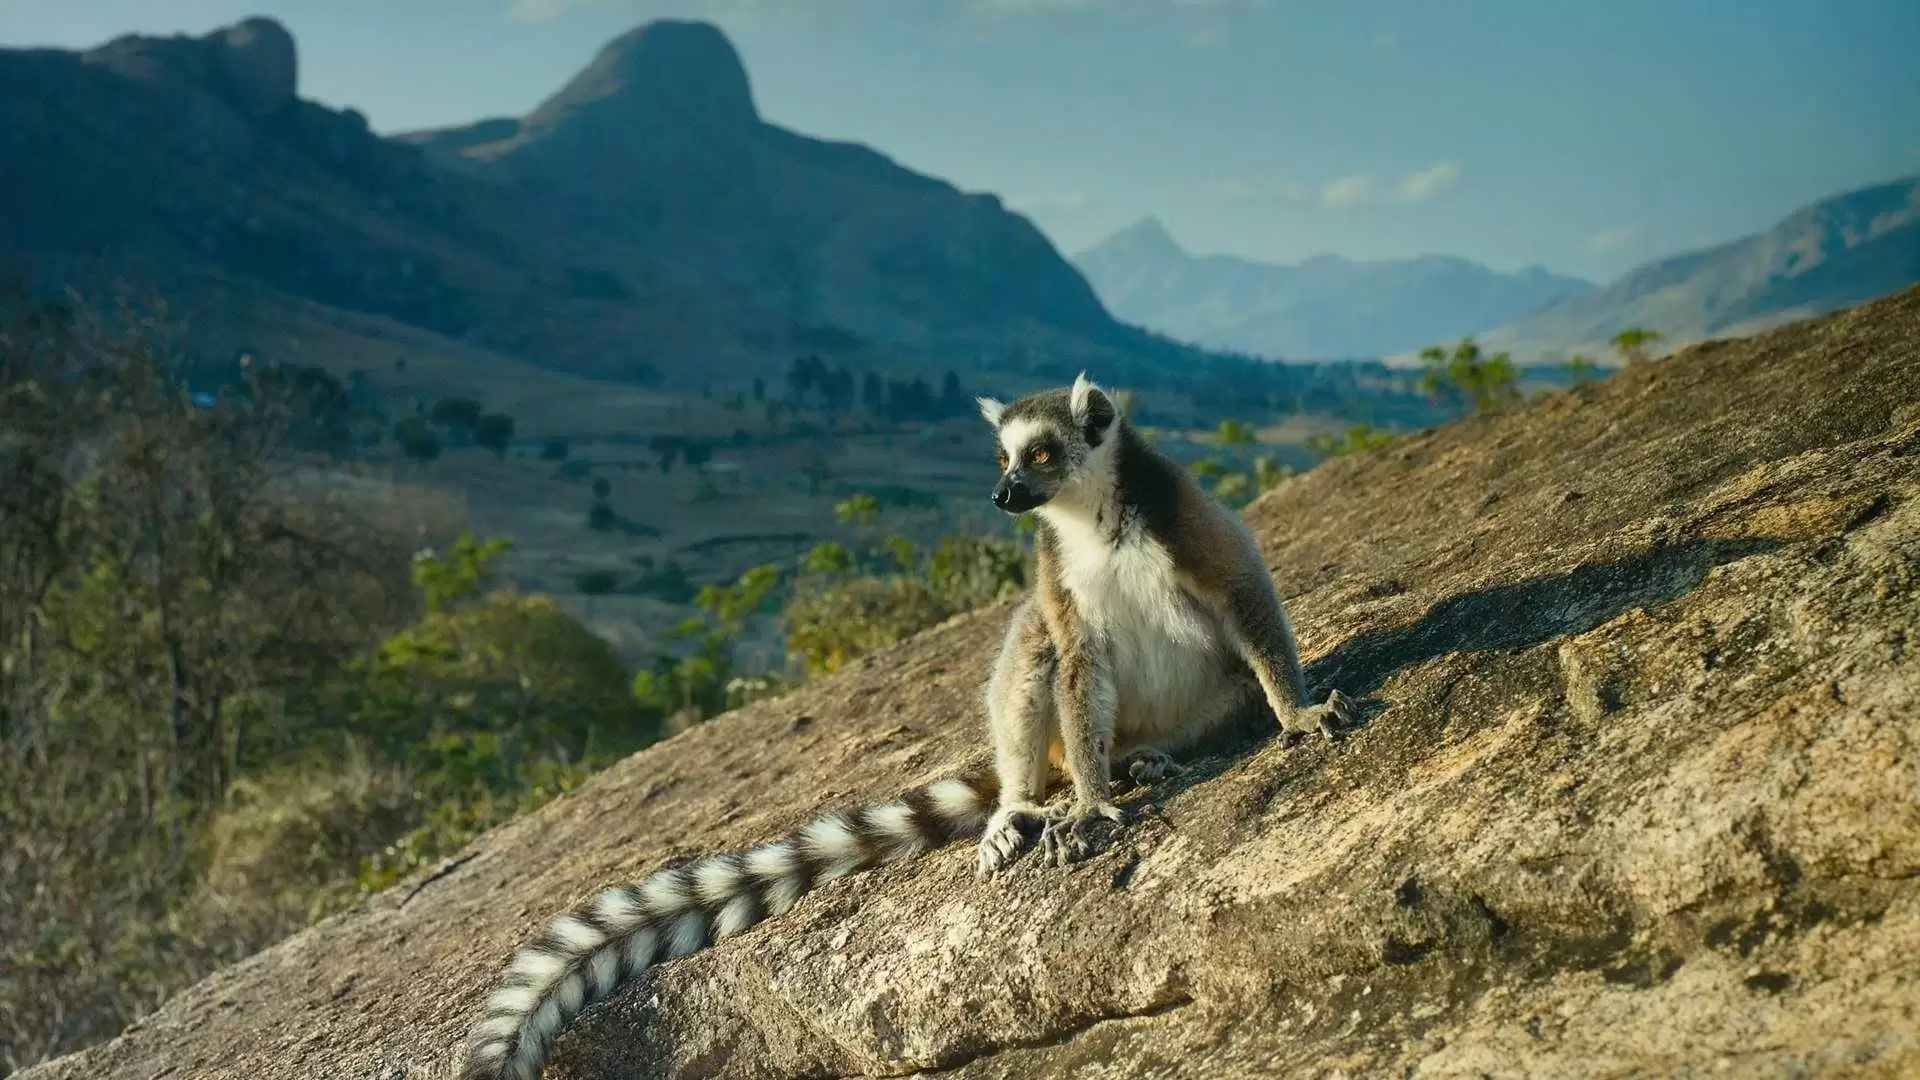 دانلود مستند Island of Lemurs: Madagascar 2014 با زیرنویس فارسی